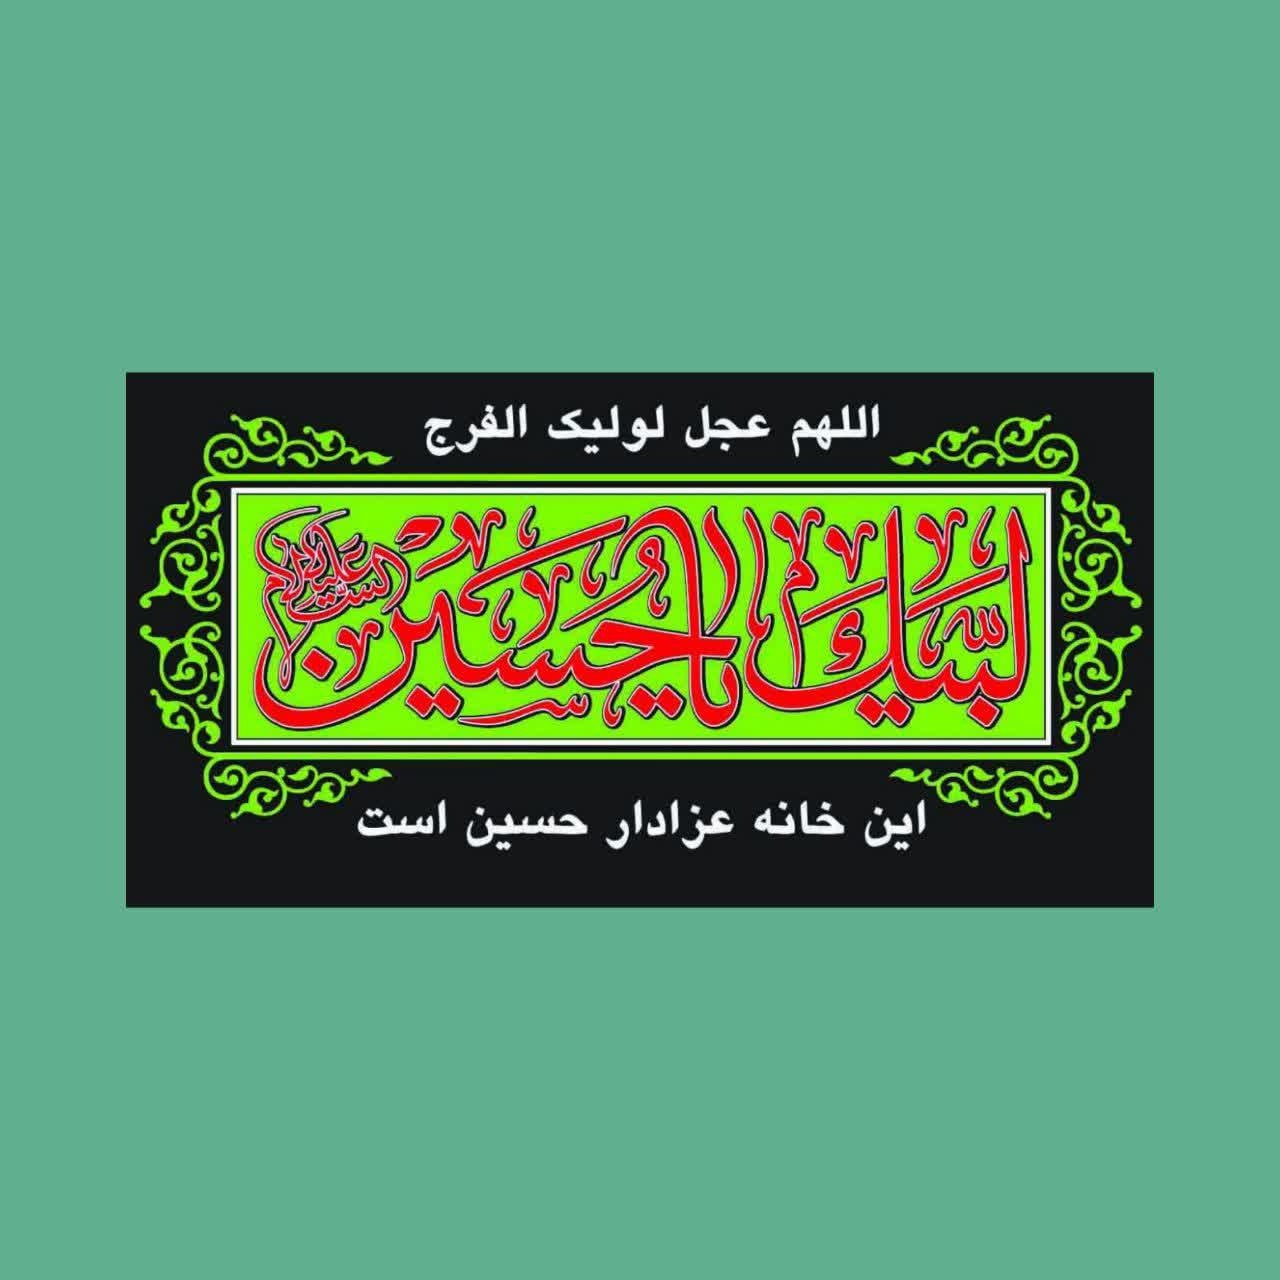 پرچم سردری با موضوع محرم بسته دو تایی(عکس تزئینی است)